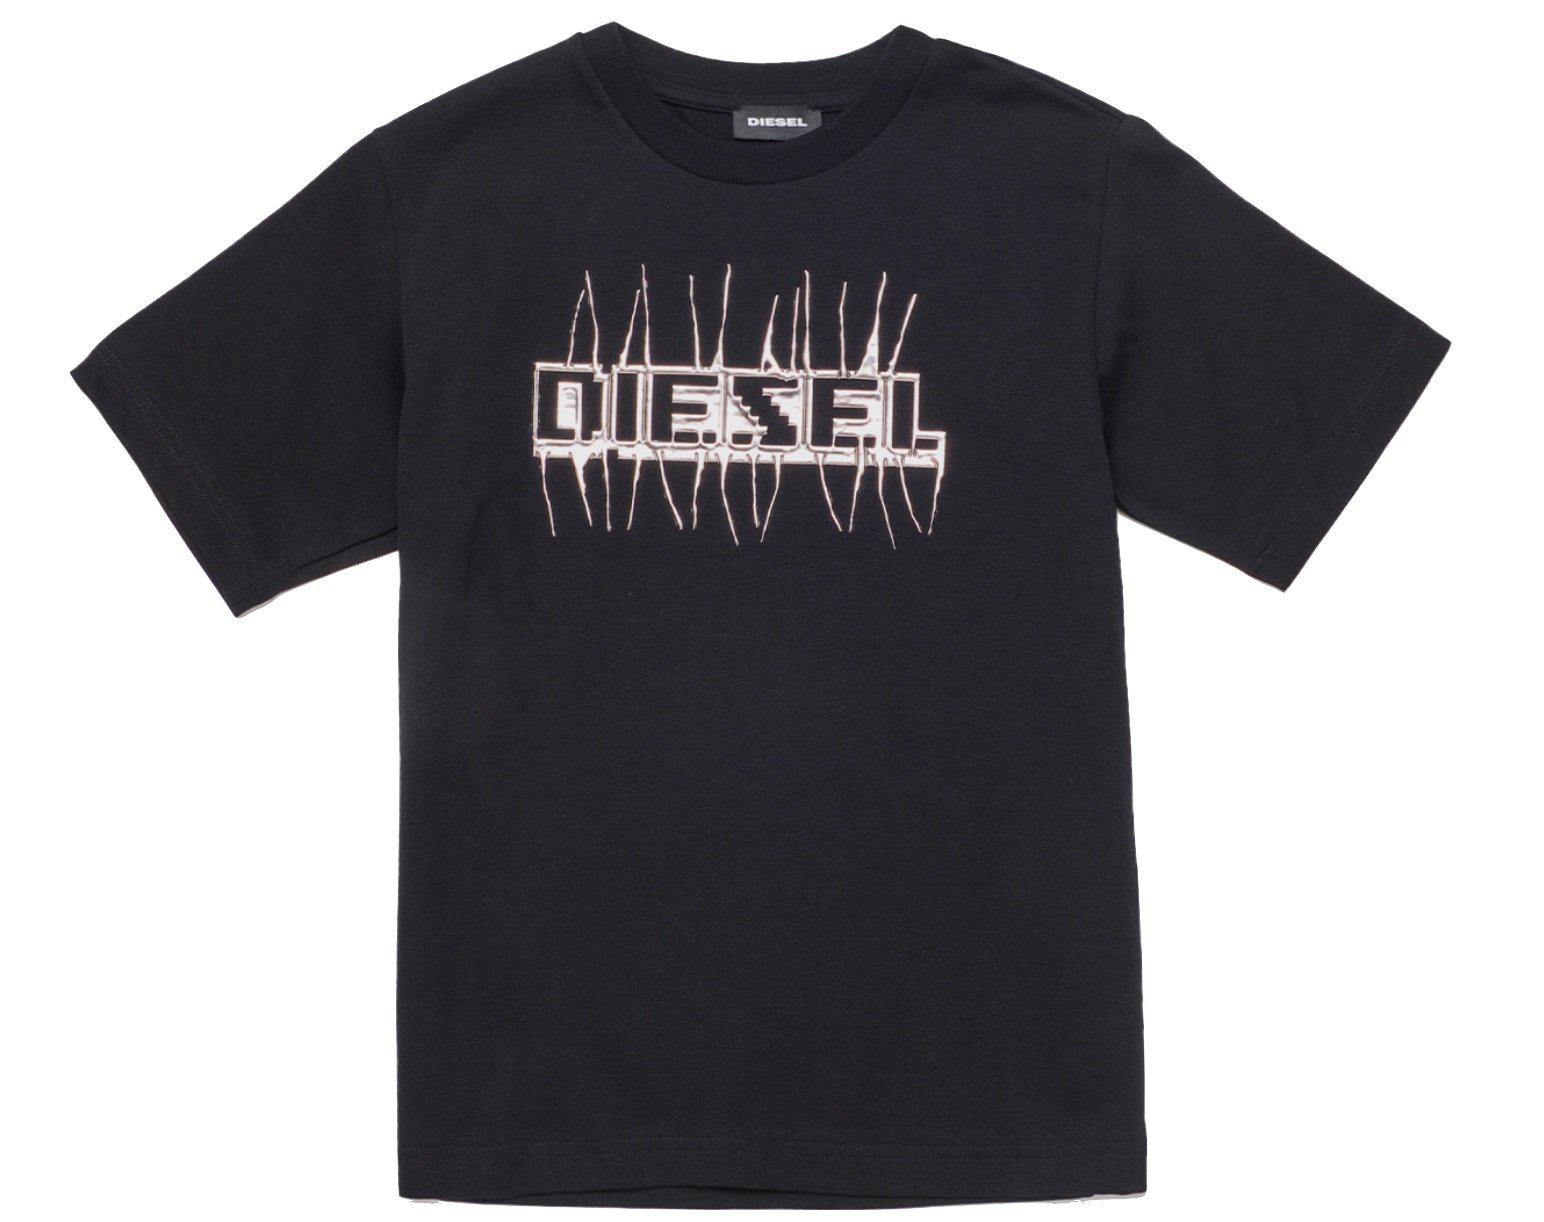 Diesel Boys Black T-Shirt With metallic Diesel Print